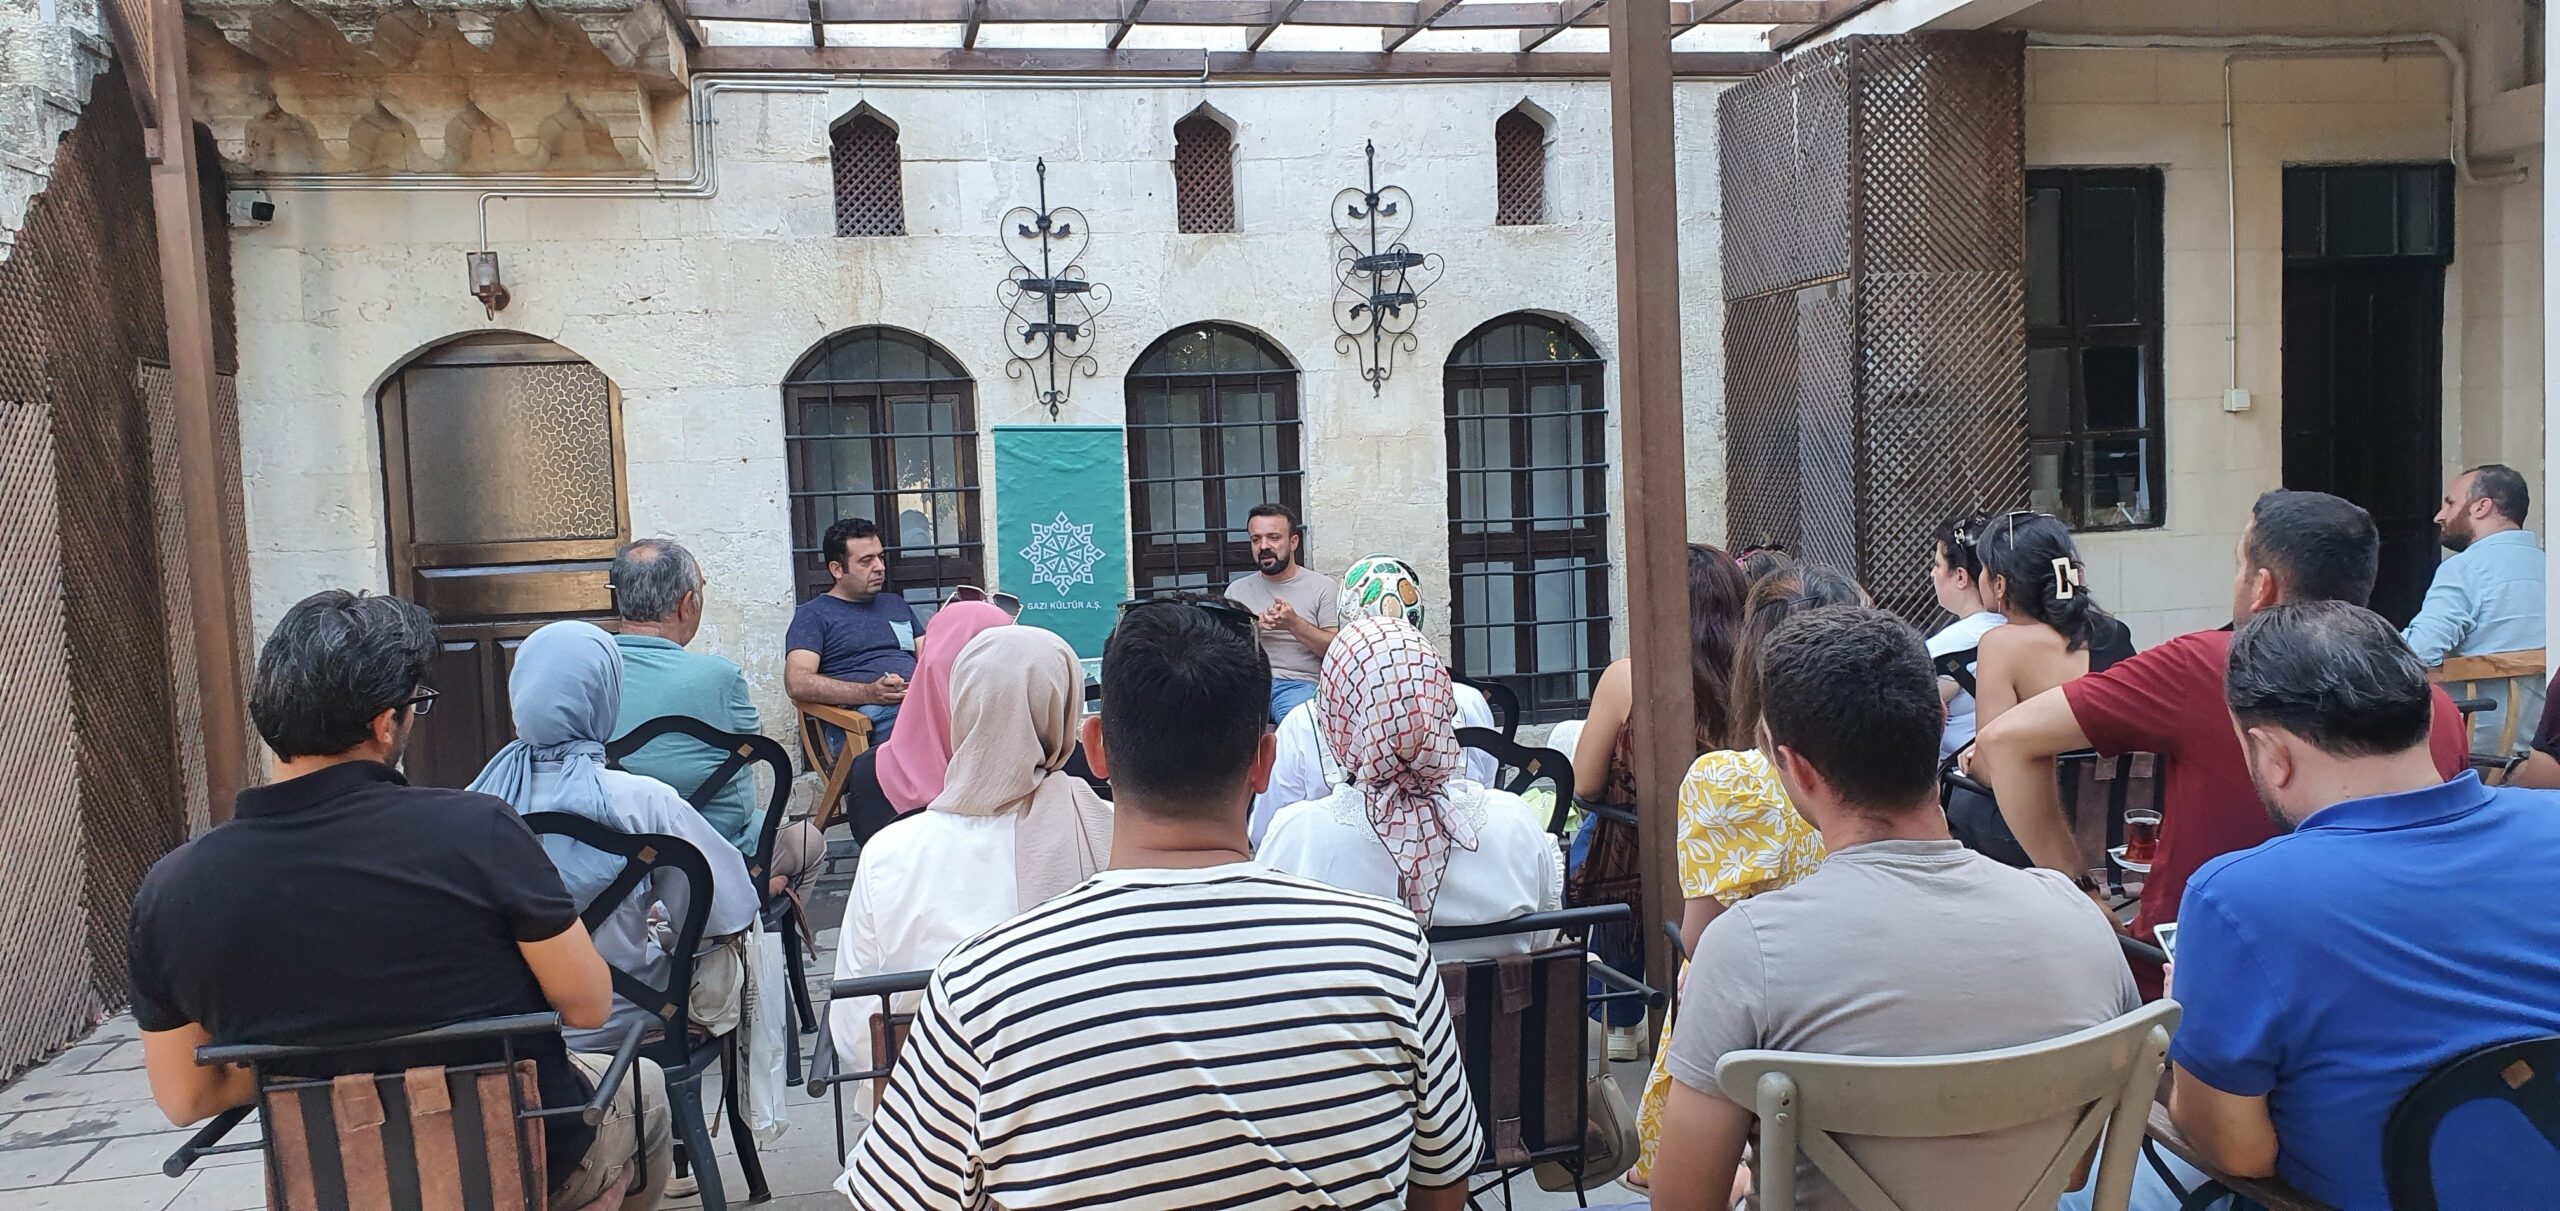 Gaziantep’te ikindi söyleşilerinin konuğu Yazar Gürdamur oldu